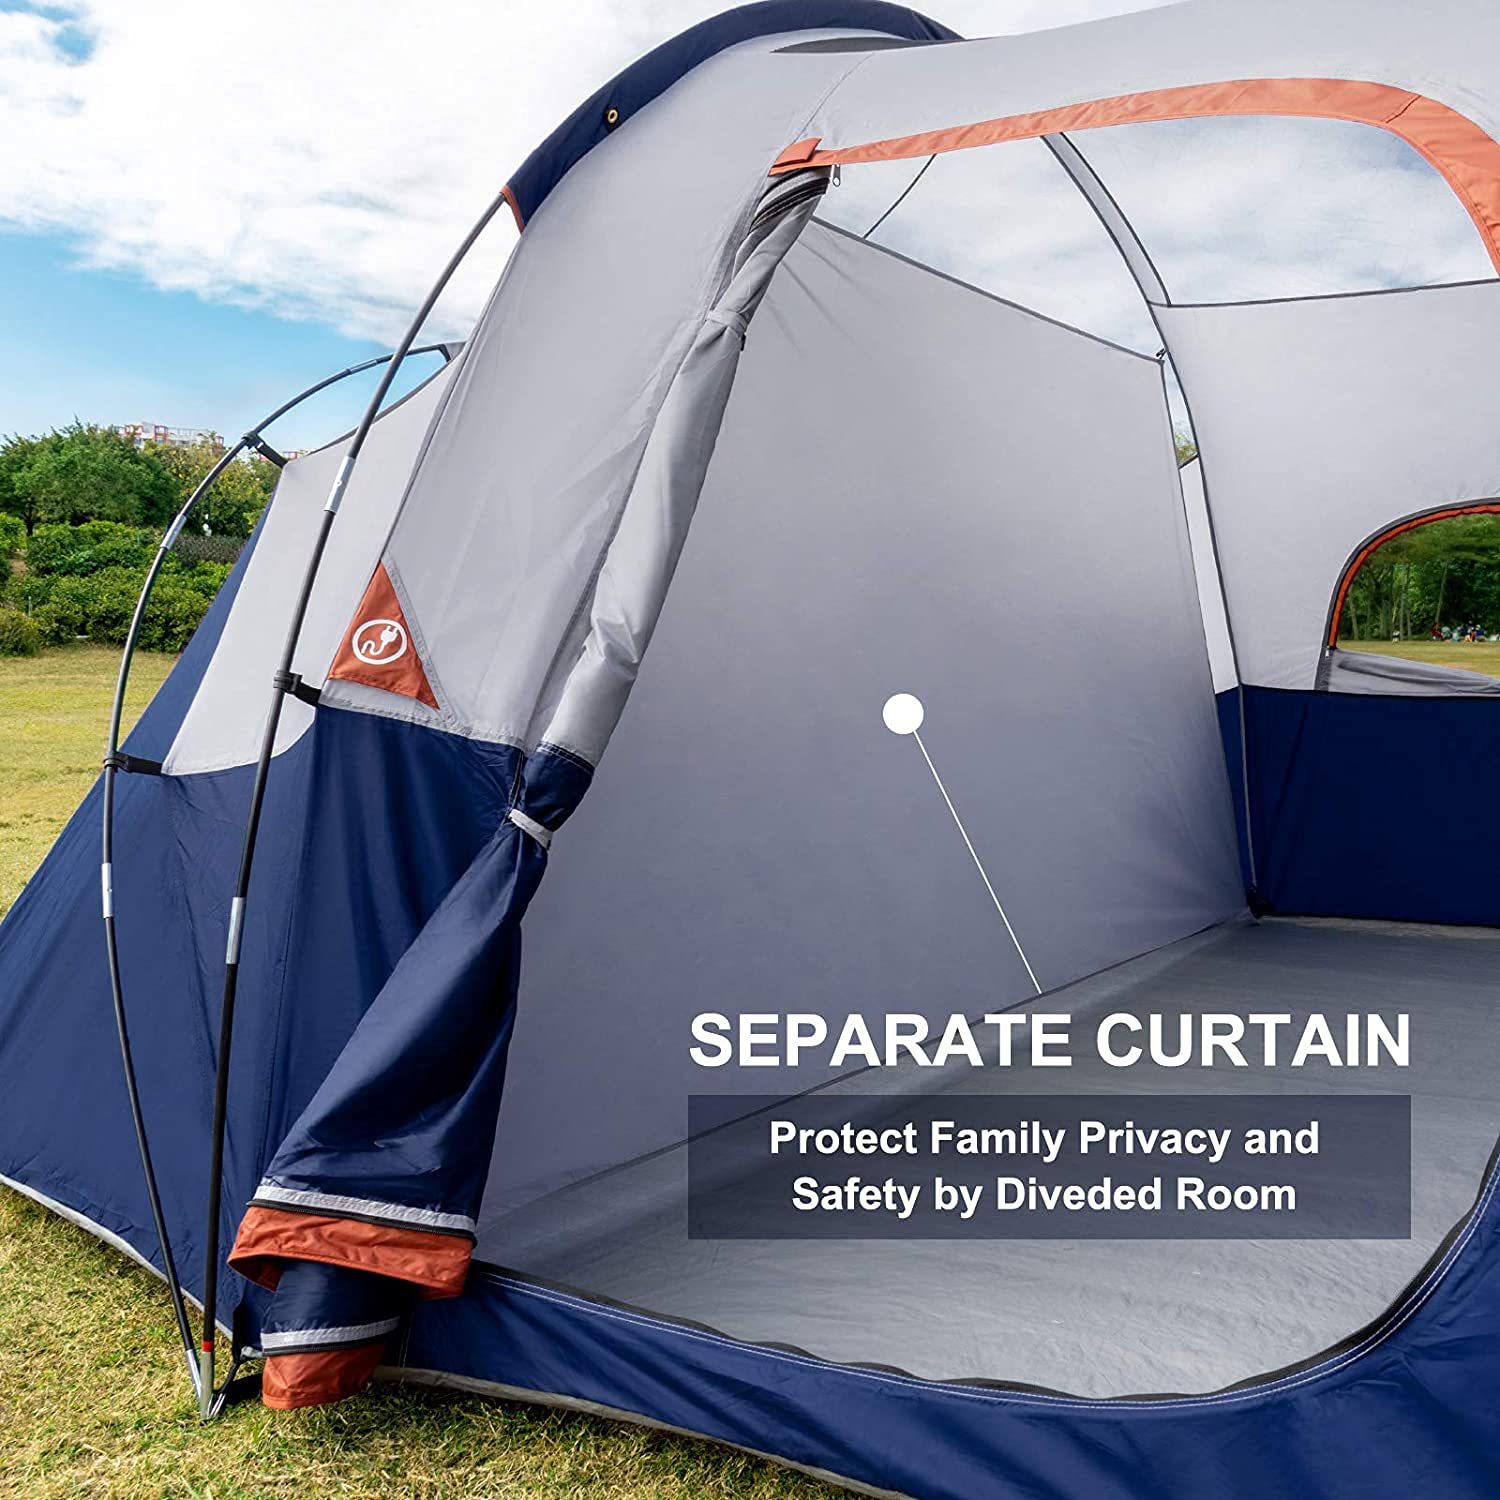 텐트-8-인-캠핑-텐트, 방수 방풍 가족 텐트, 5개의 대형 메쉬 창, 2중 레이어, 분리된 공간을 위한 분할 커튼, 휴대용 캐리 백